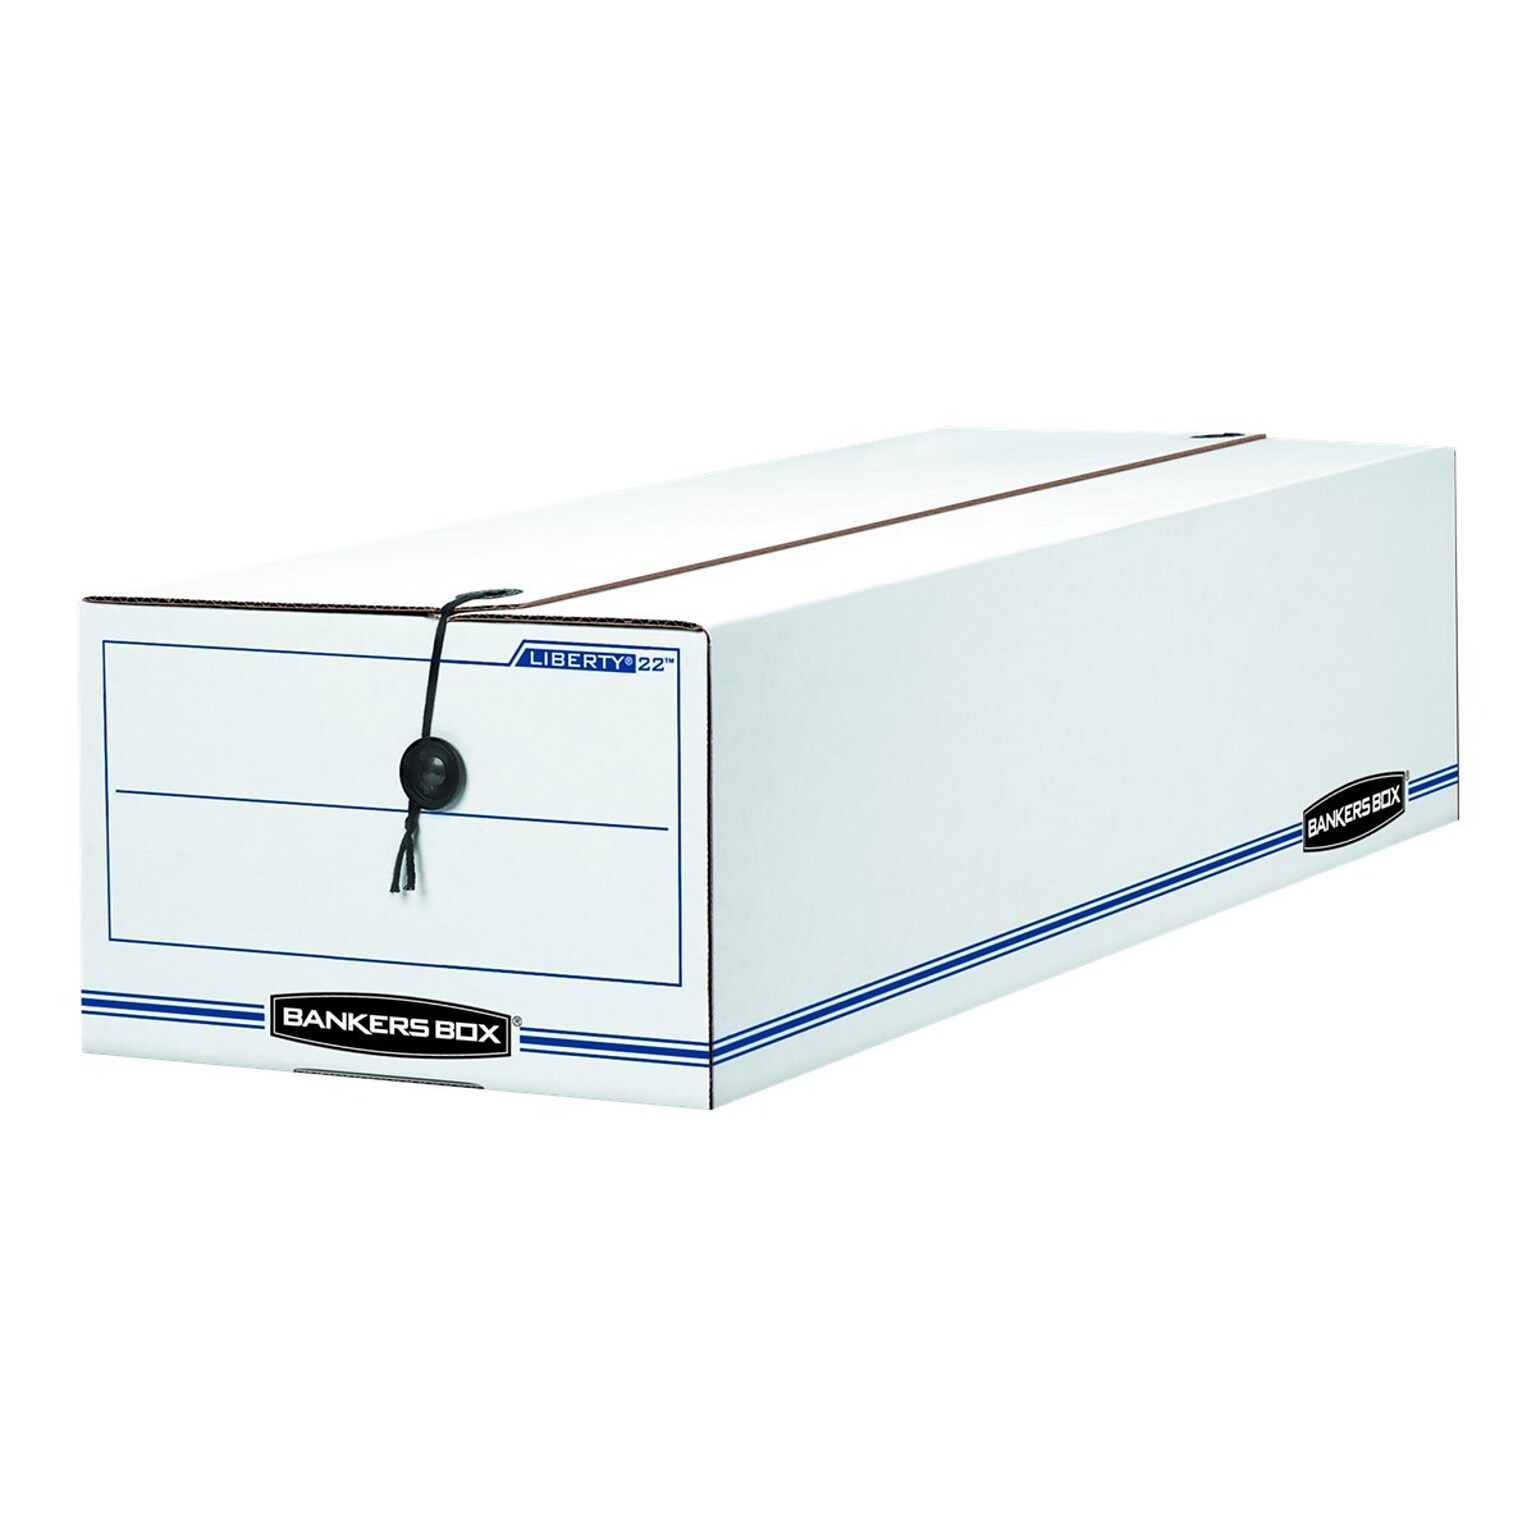 Bankers Box Liberty Corrugated Check & Form Storage Boxes, String & Button, 6H x 9.5W x 23.25D, White/Blue, 12/Carton (00022)